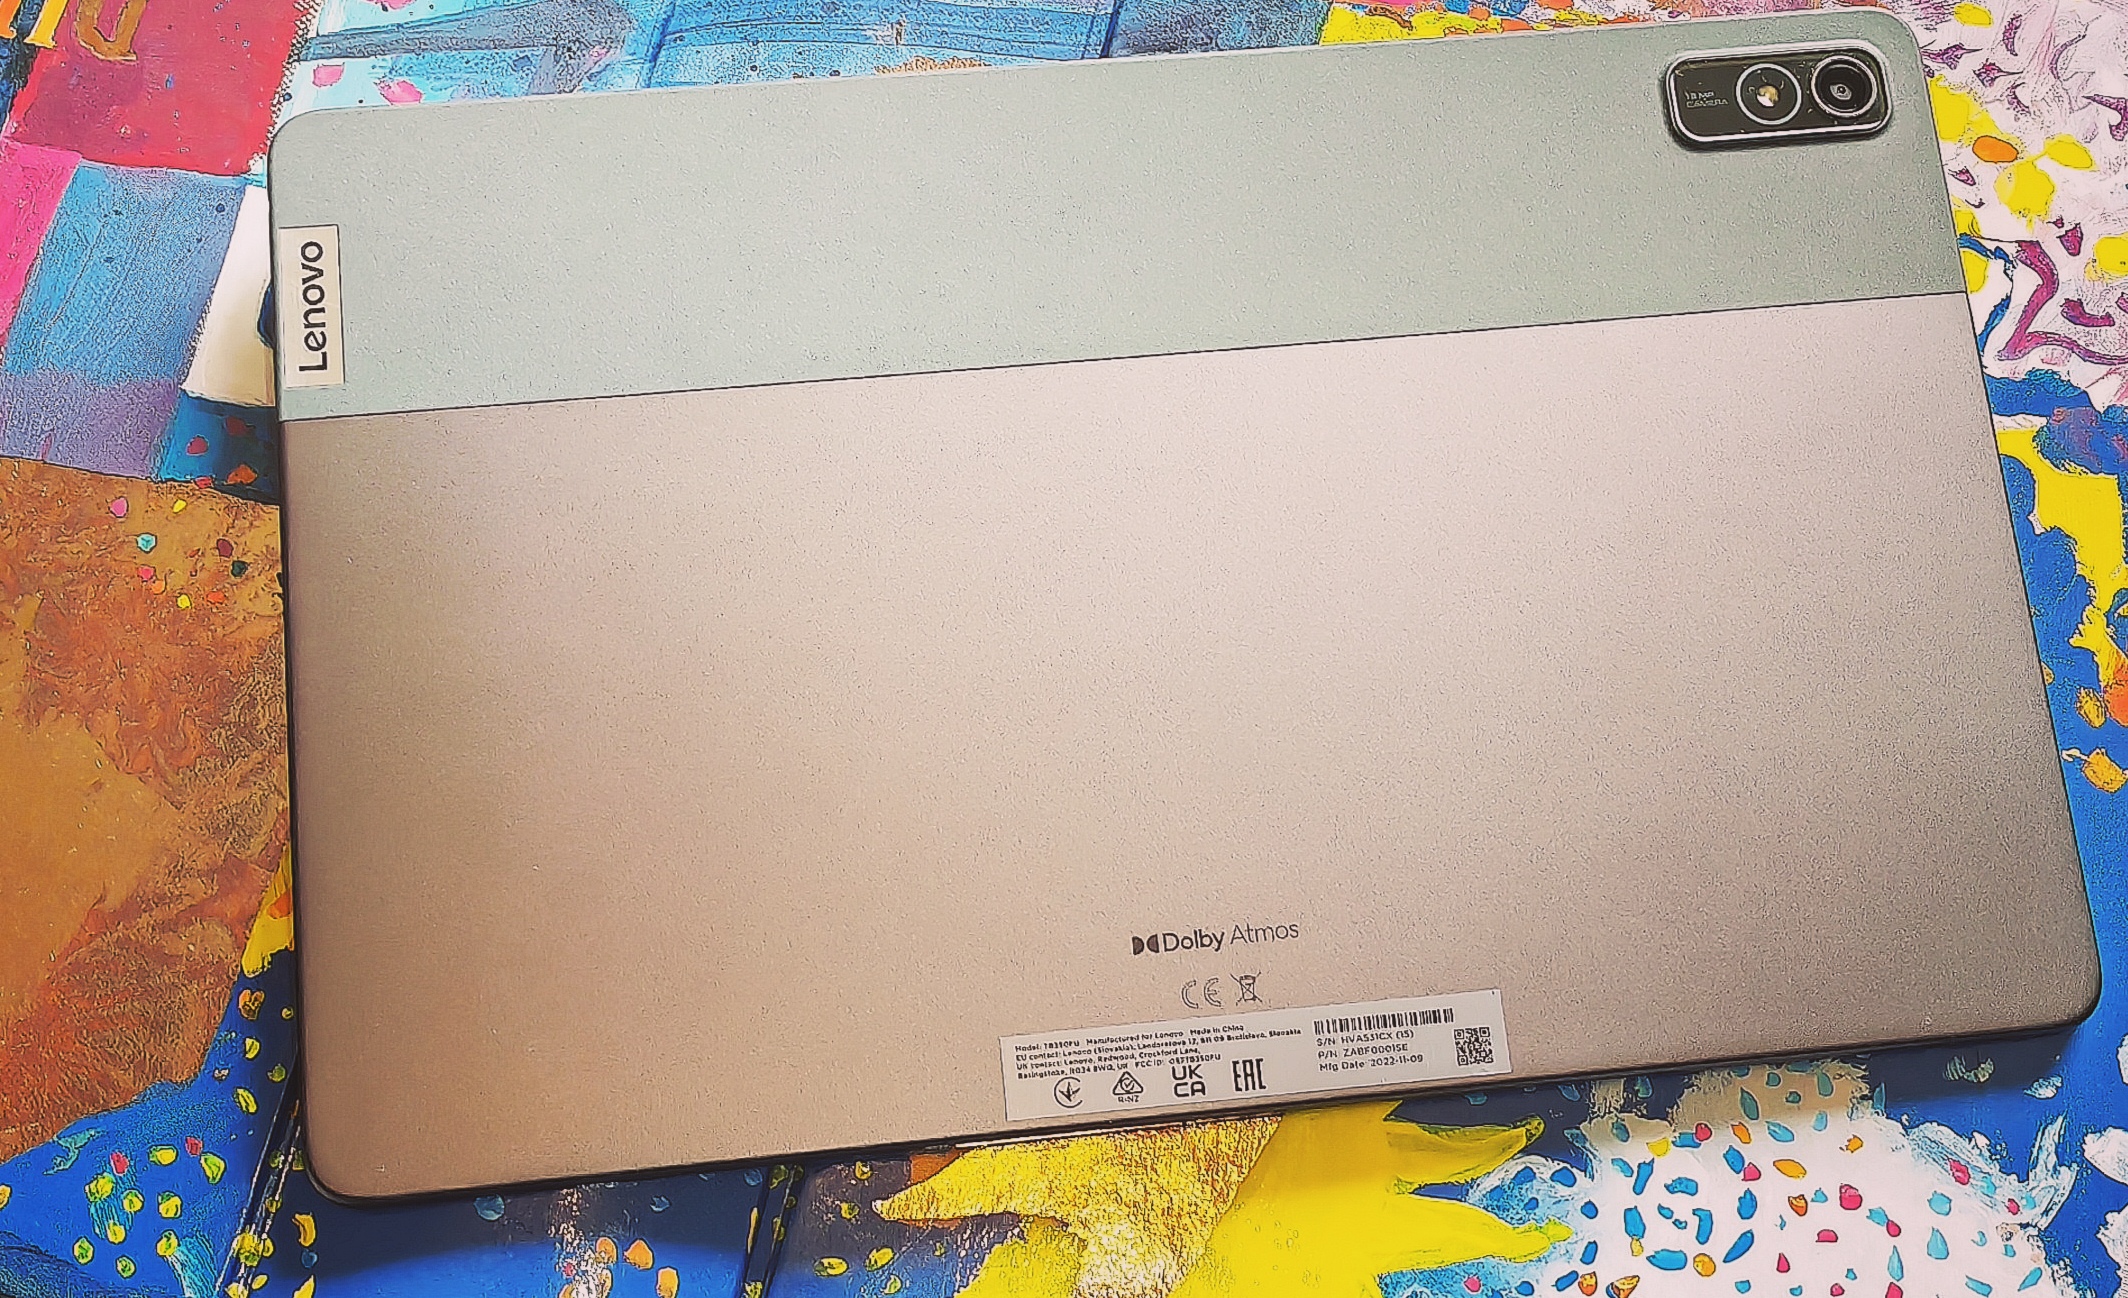 Tablet Lenovo Tab P11 (2da Gen) TB350XU 11.5” 2K 4G LTE 6GB 128GB